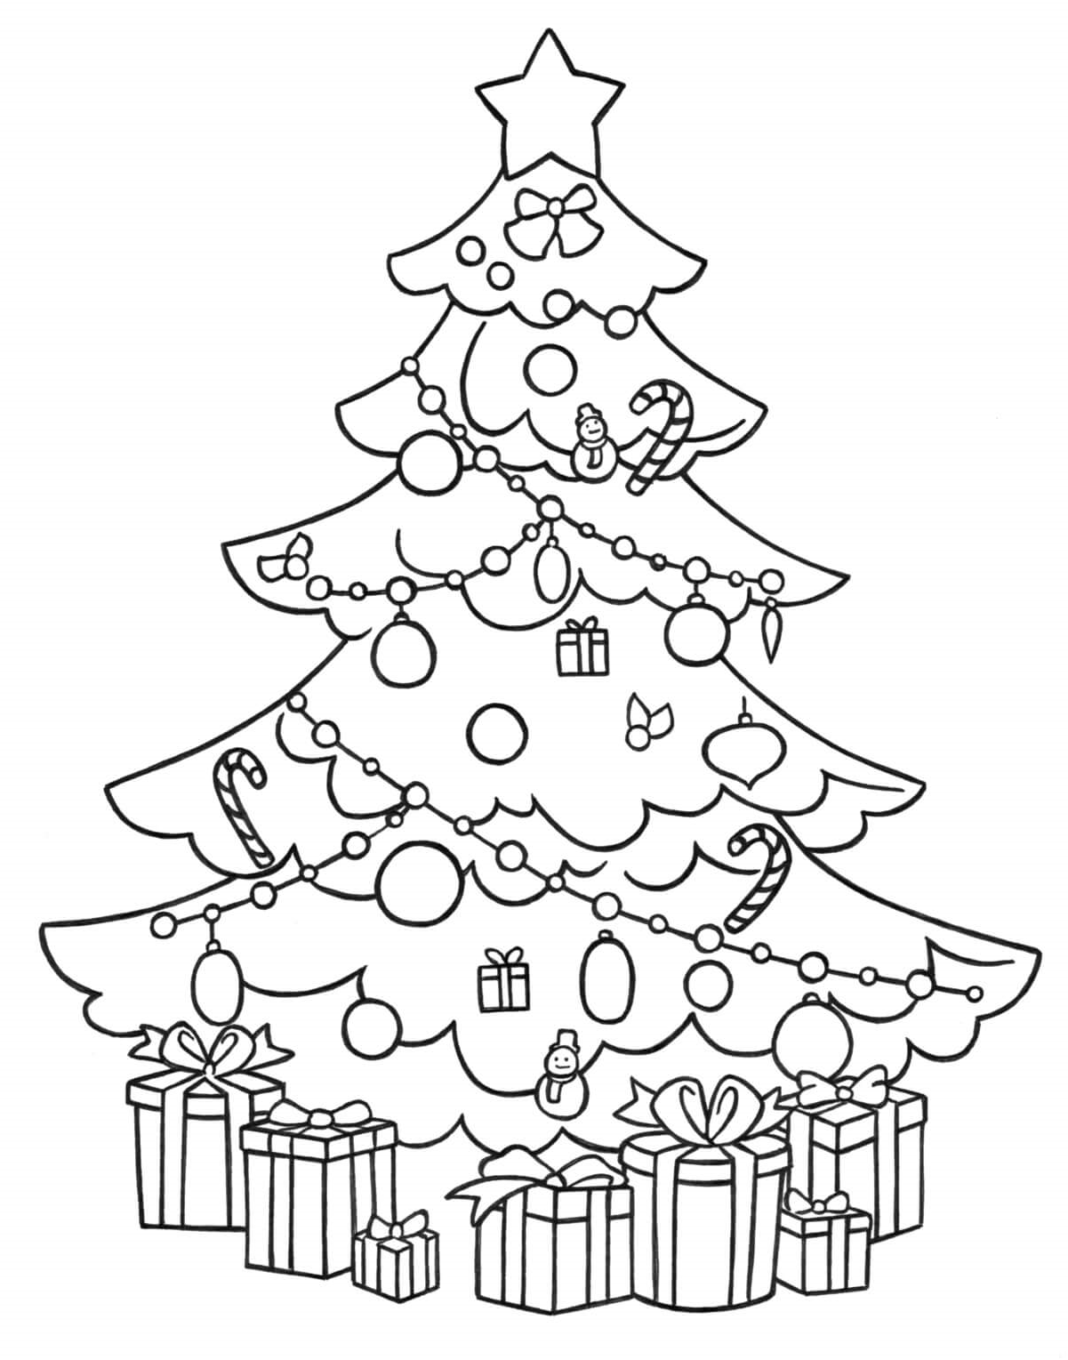 regali da colorare sotto l'albero di Natale per i bambini stampabili